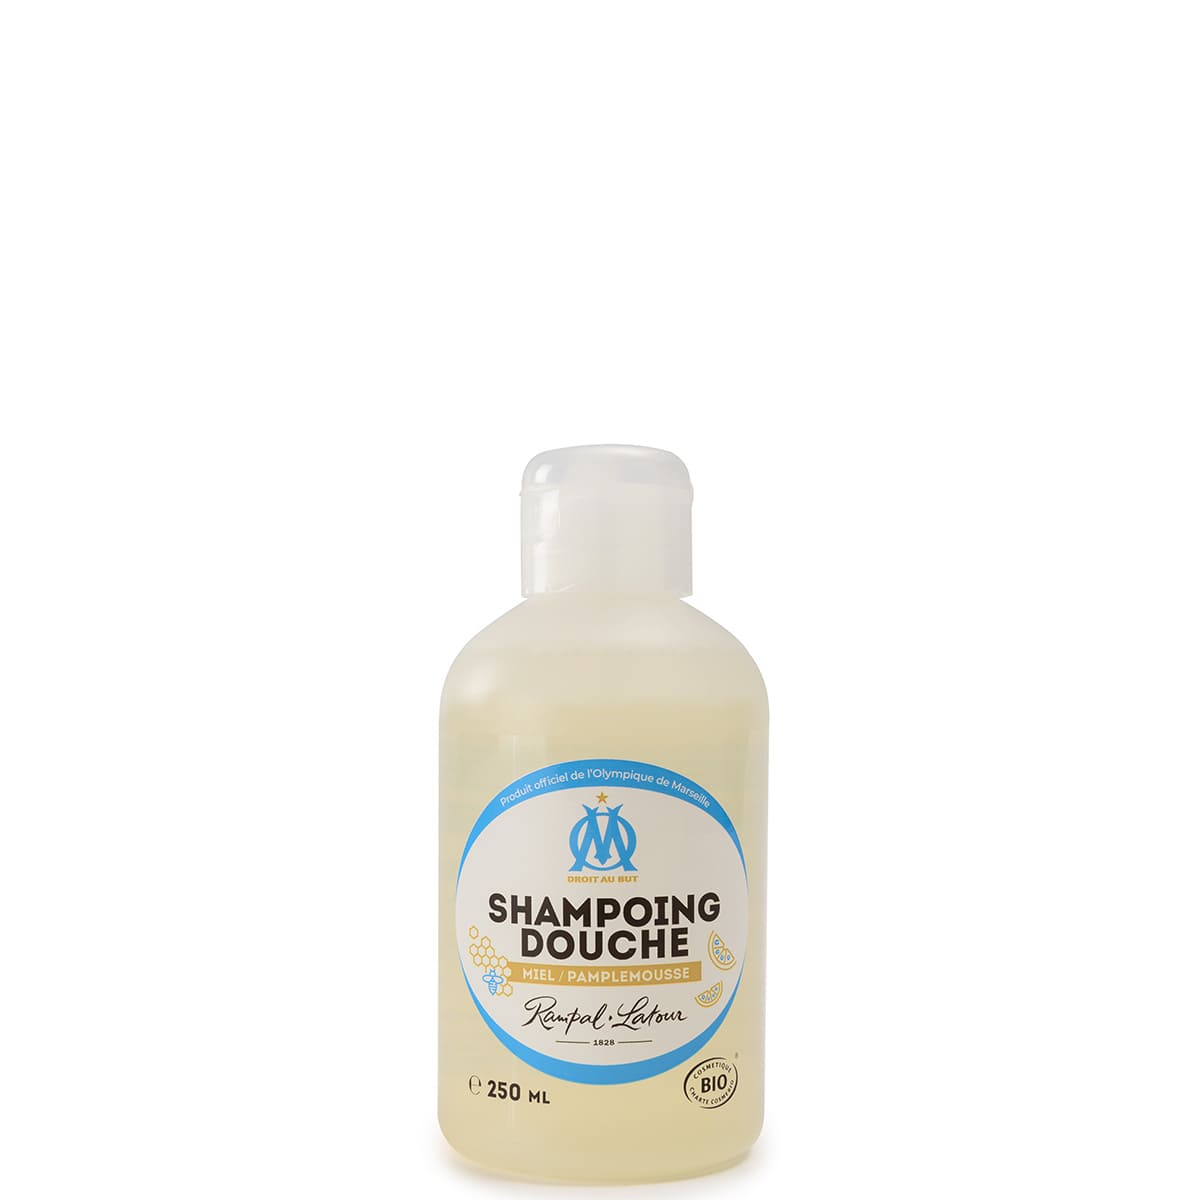 Shampoing douche certifié bio Pamplemousse 250ml - Olympique de Marsei –  Rampal Latour